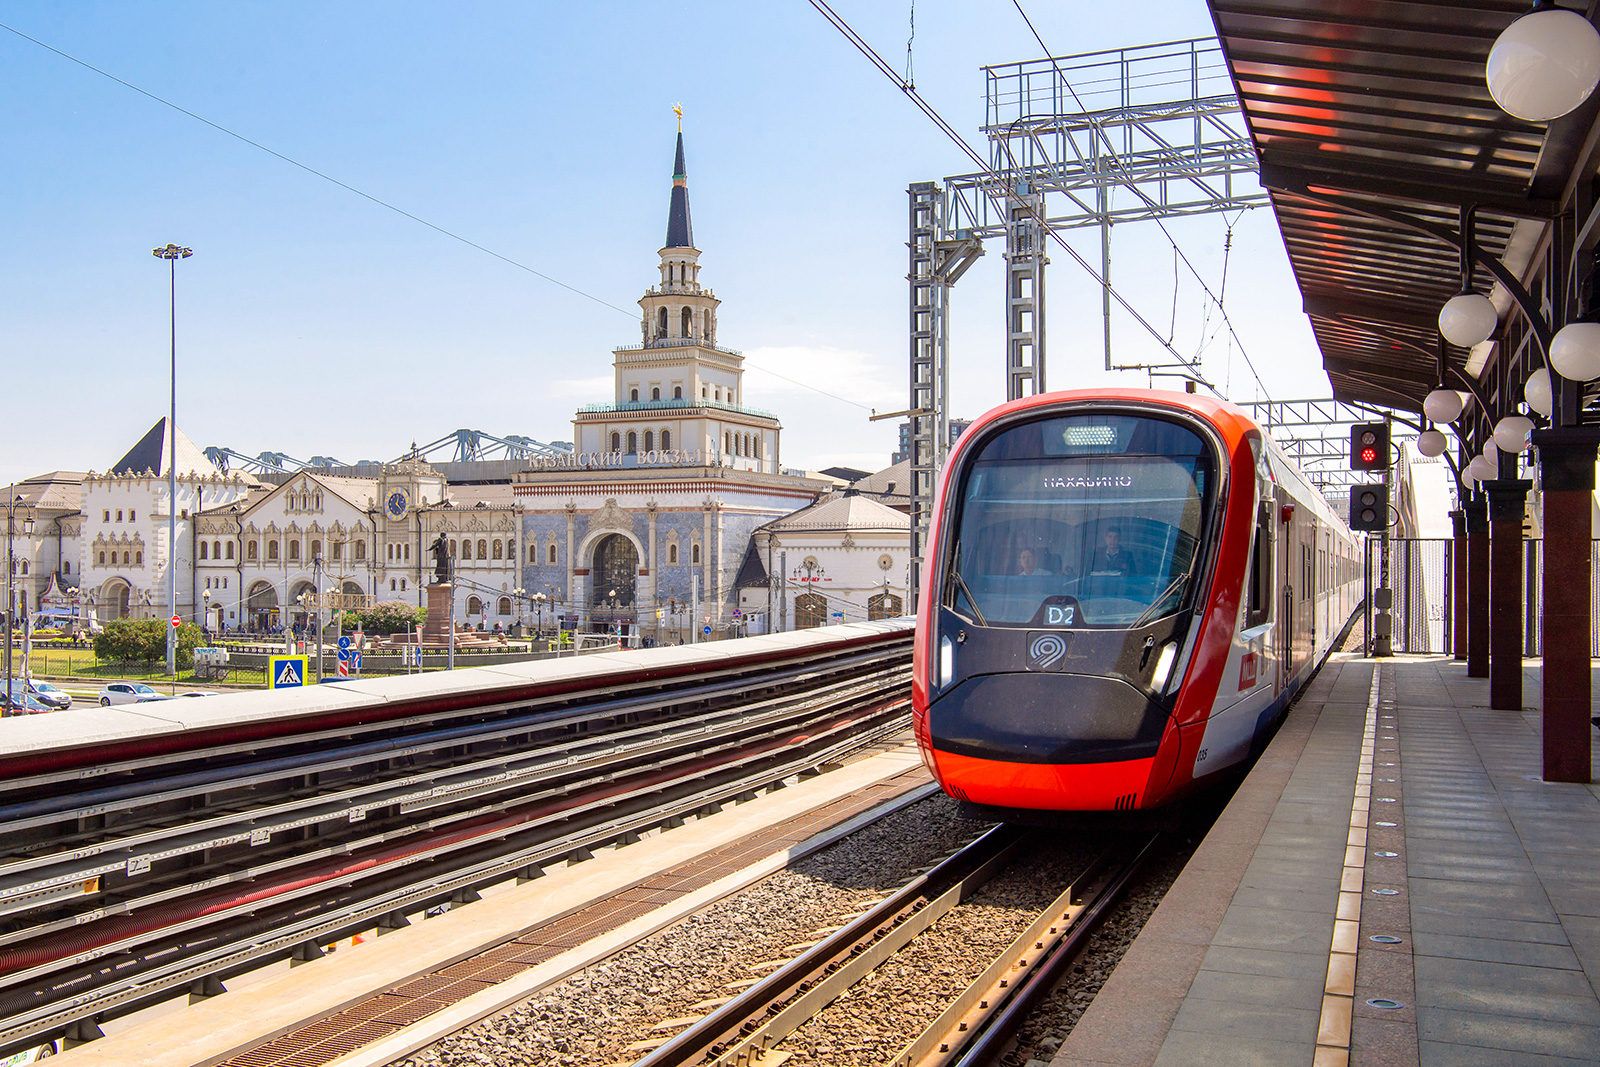 Собянин объявил о готовности участка Площадь трех вокзалов - Курская к пуску МЦД-4